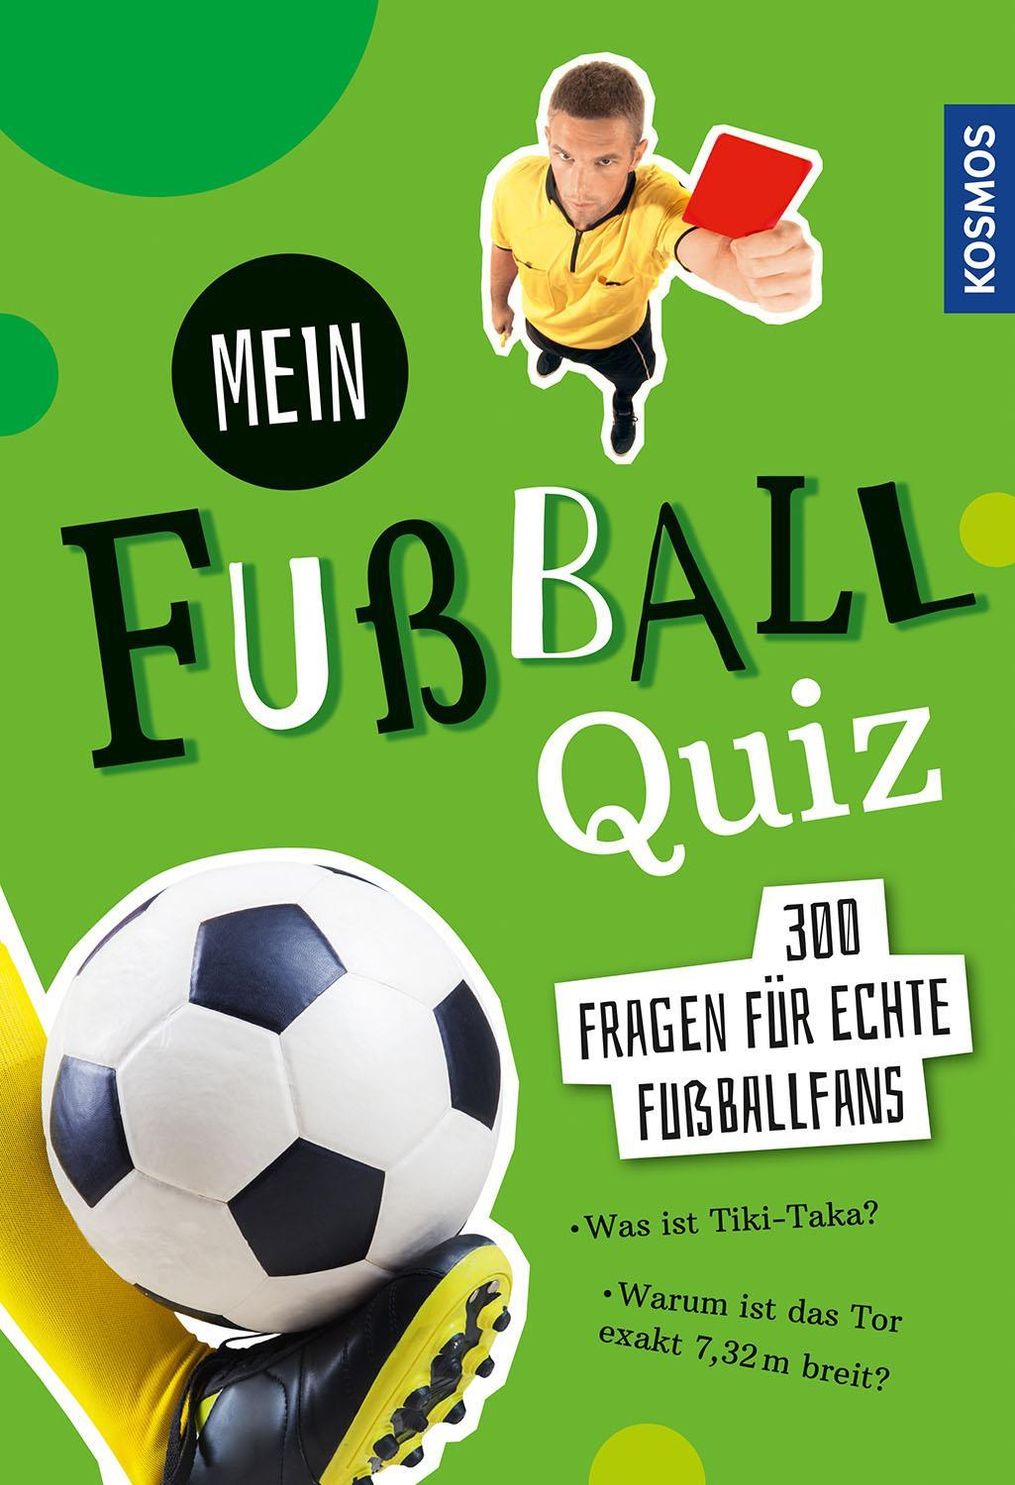 Mein Fußball Quiz Buch von Jonas Kozinowski versandkostenfrei bestellen